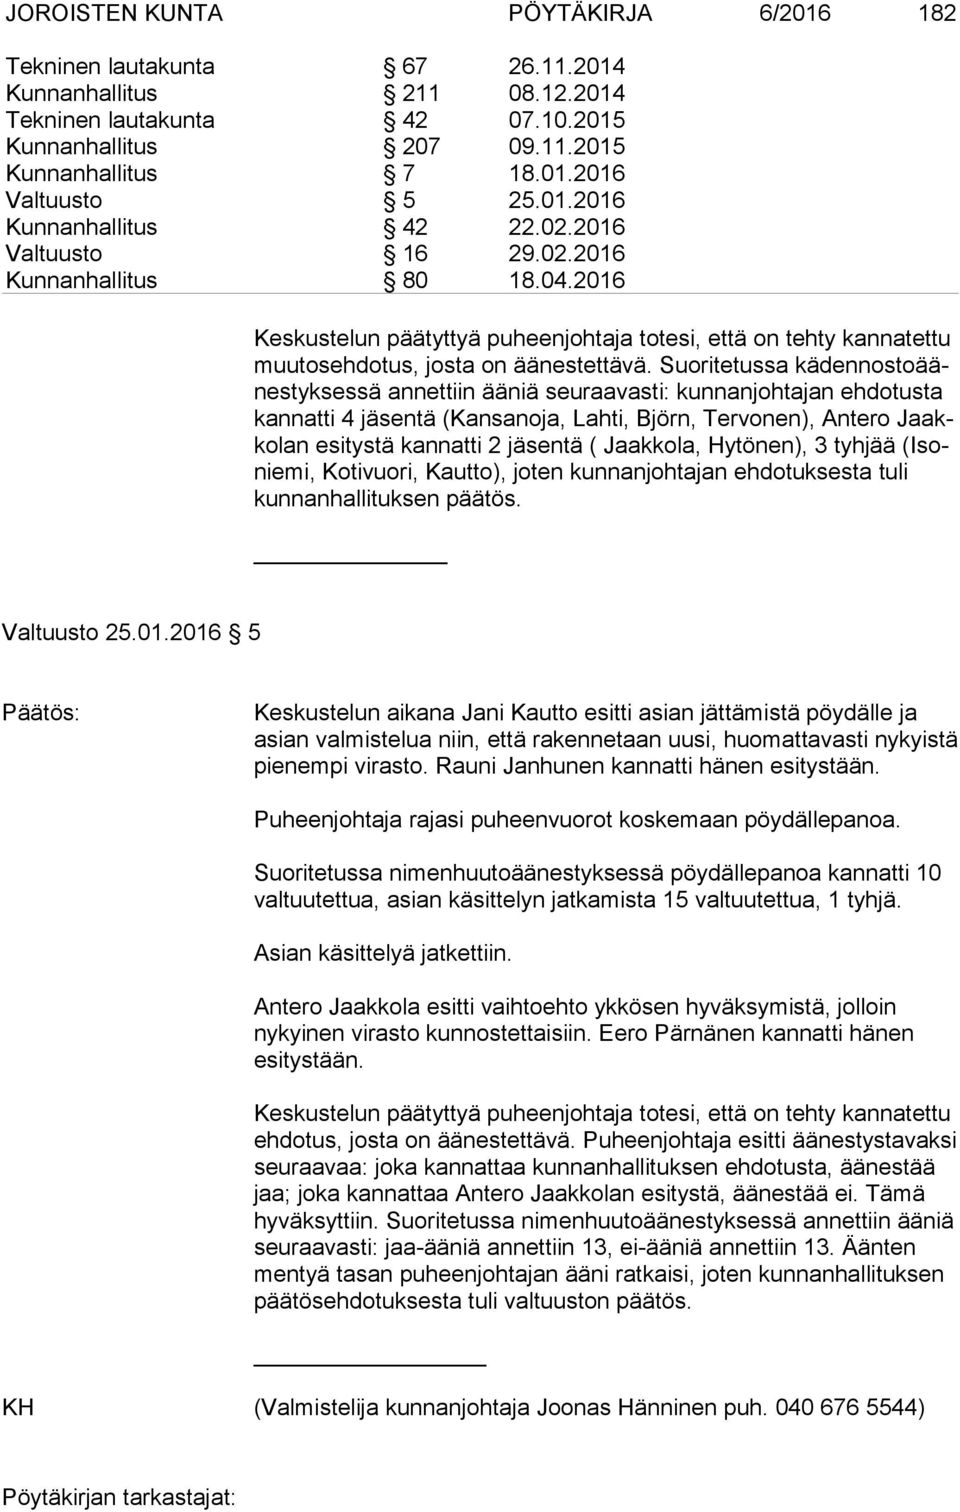 jäsentä ( Jaakkola, Hytönen), 3 tyhjää (Isonie mi, Kotivuori, Kautto), joten kunnanjohtajan ehdotuksesta tuli kun nan hal li tuk sen päätös. Valtuusto 25.01.